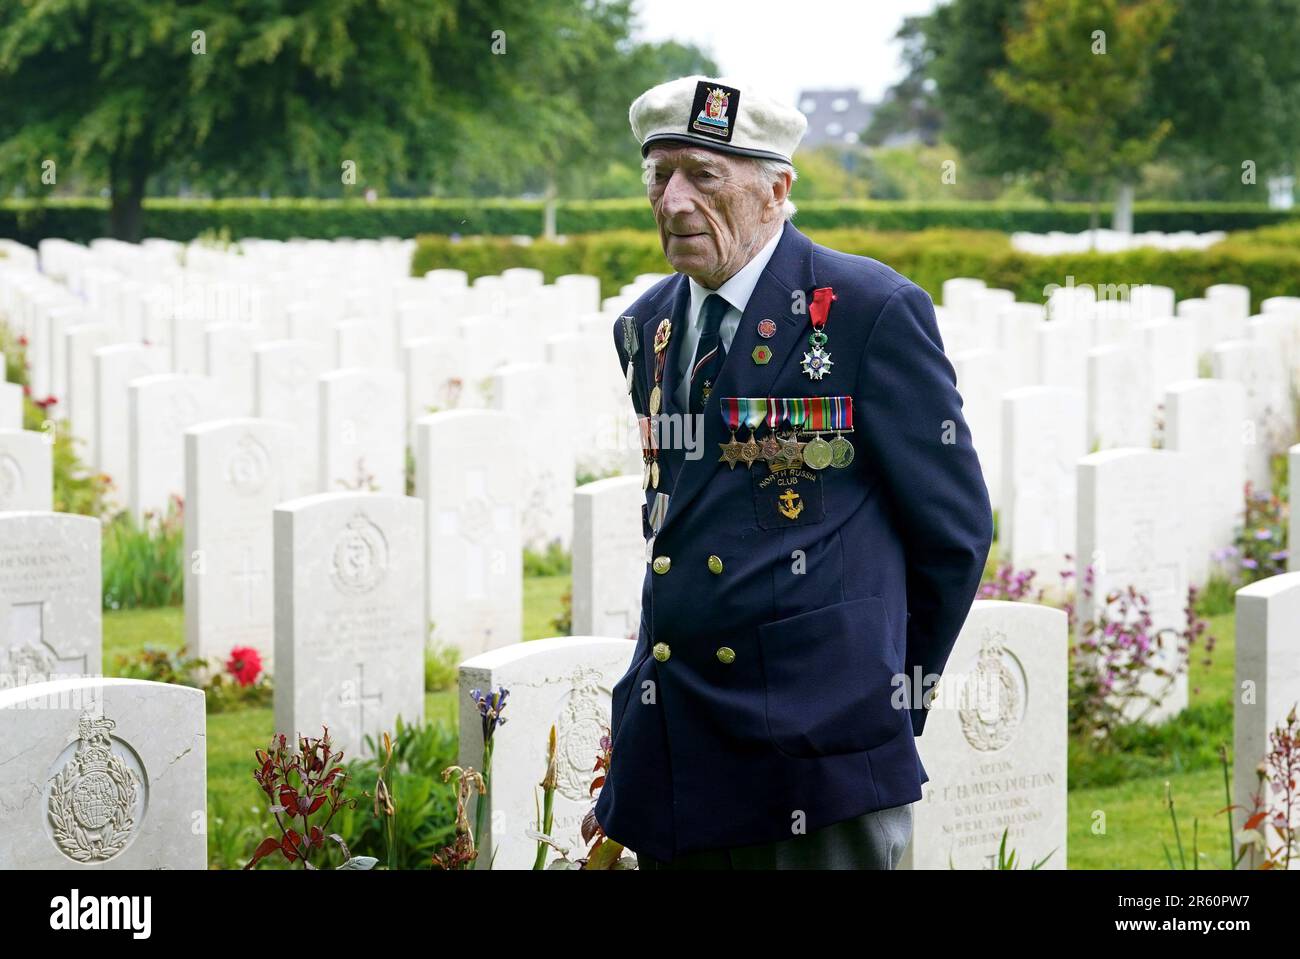 D-Day-Veteran Alec Penstone anlässlich des Royal British Legion (RBL) Service of Remembrance anlässlich des 79. Jahrestages der D-Day-Landungen auf dem Bayeux-Friedhof in der Normandie, Frankreich. Der Dienst erinnert an die 22.442 Soldaten und Frauen aus 38 verschiedenen Ländern, die am D-Day und während der Schlacht in der Normandie im Sommer 1944 unter britischem Kommando starben. Foto: Dienstag, 6. Juni 2023. Stockfoto